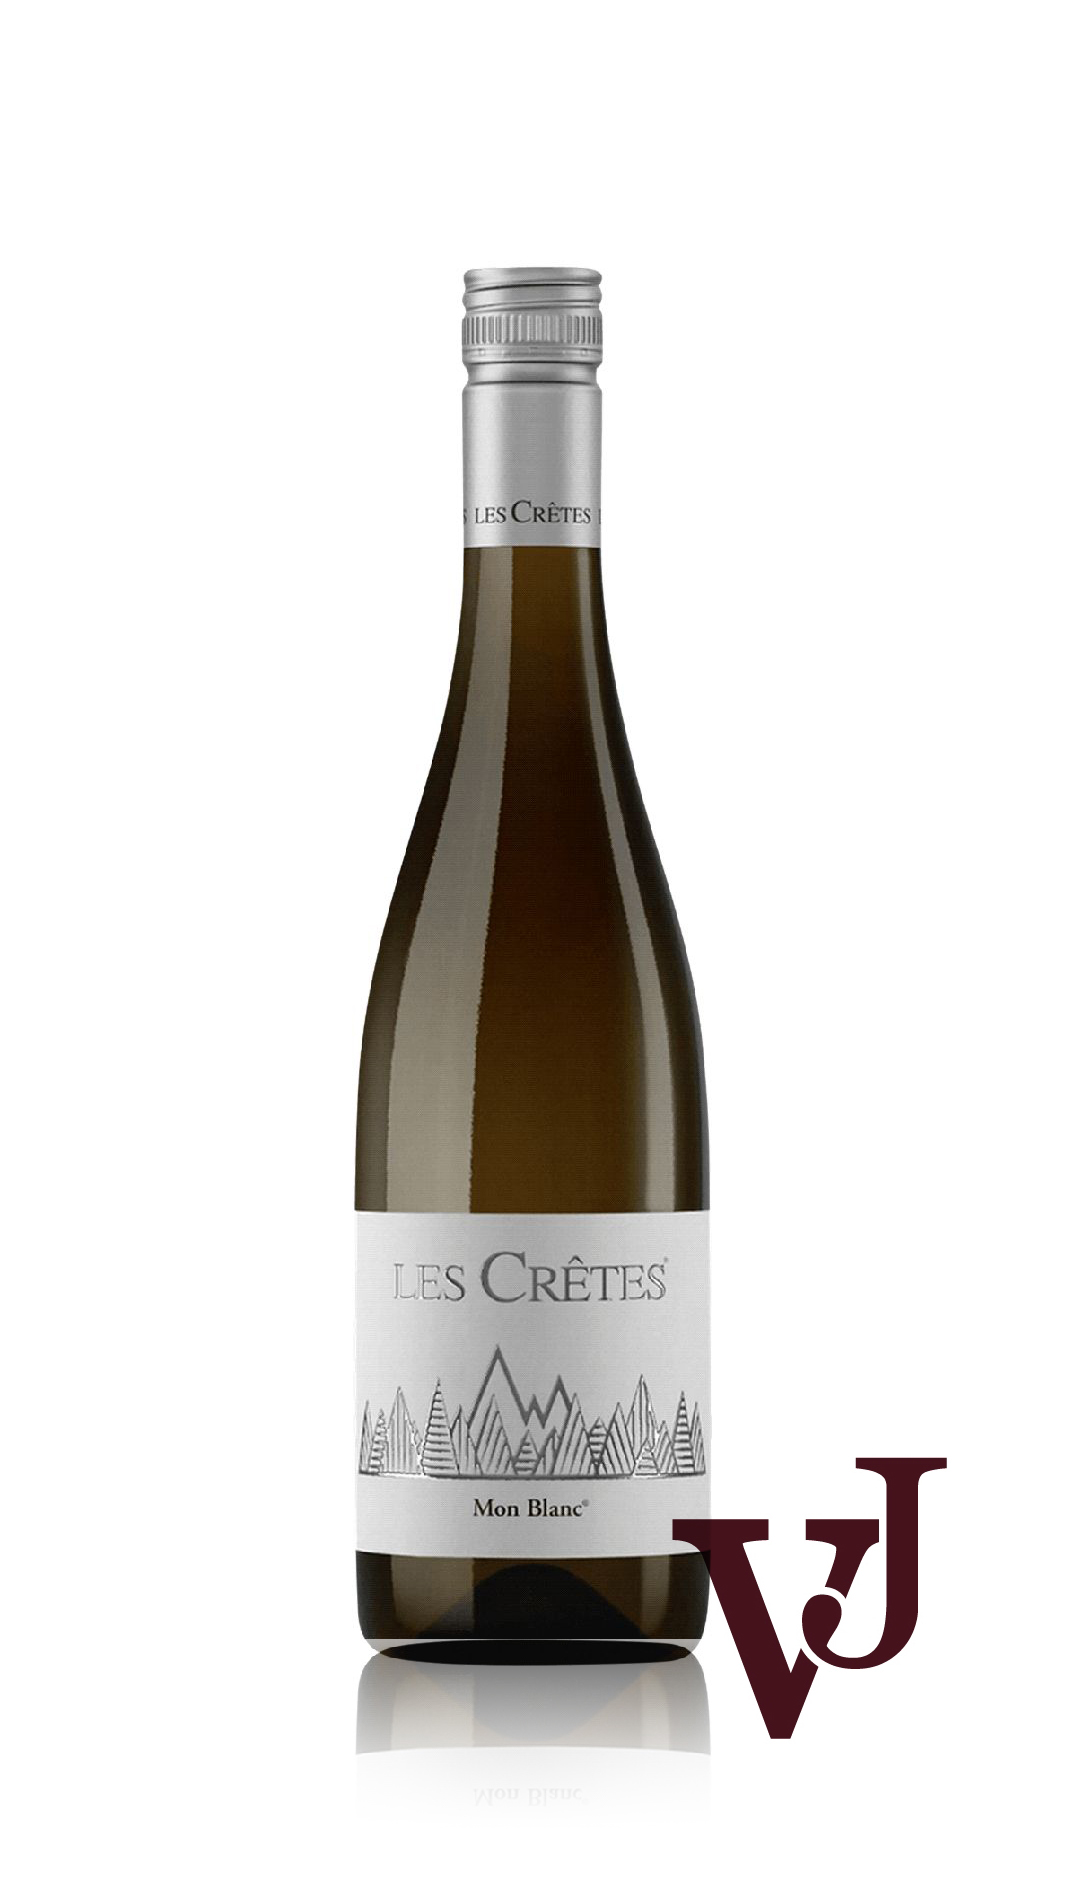 Vitt Vin - Les Crêtes Mon Blanc artikel nummer 5233801 från producenten Les Crêtes från området Italien